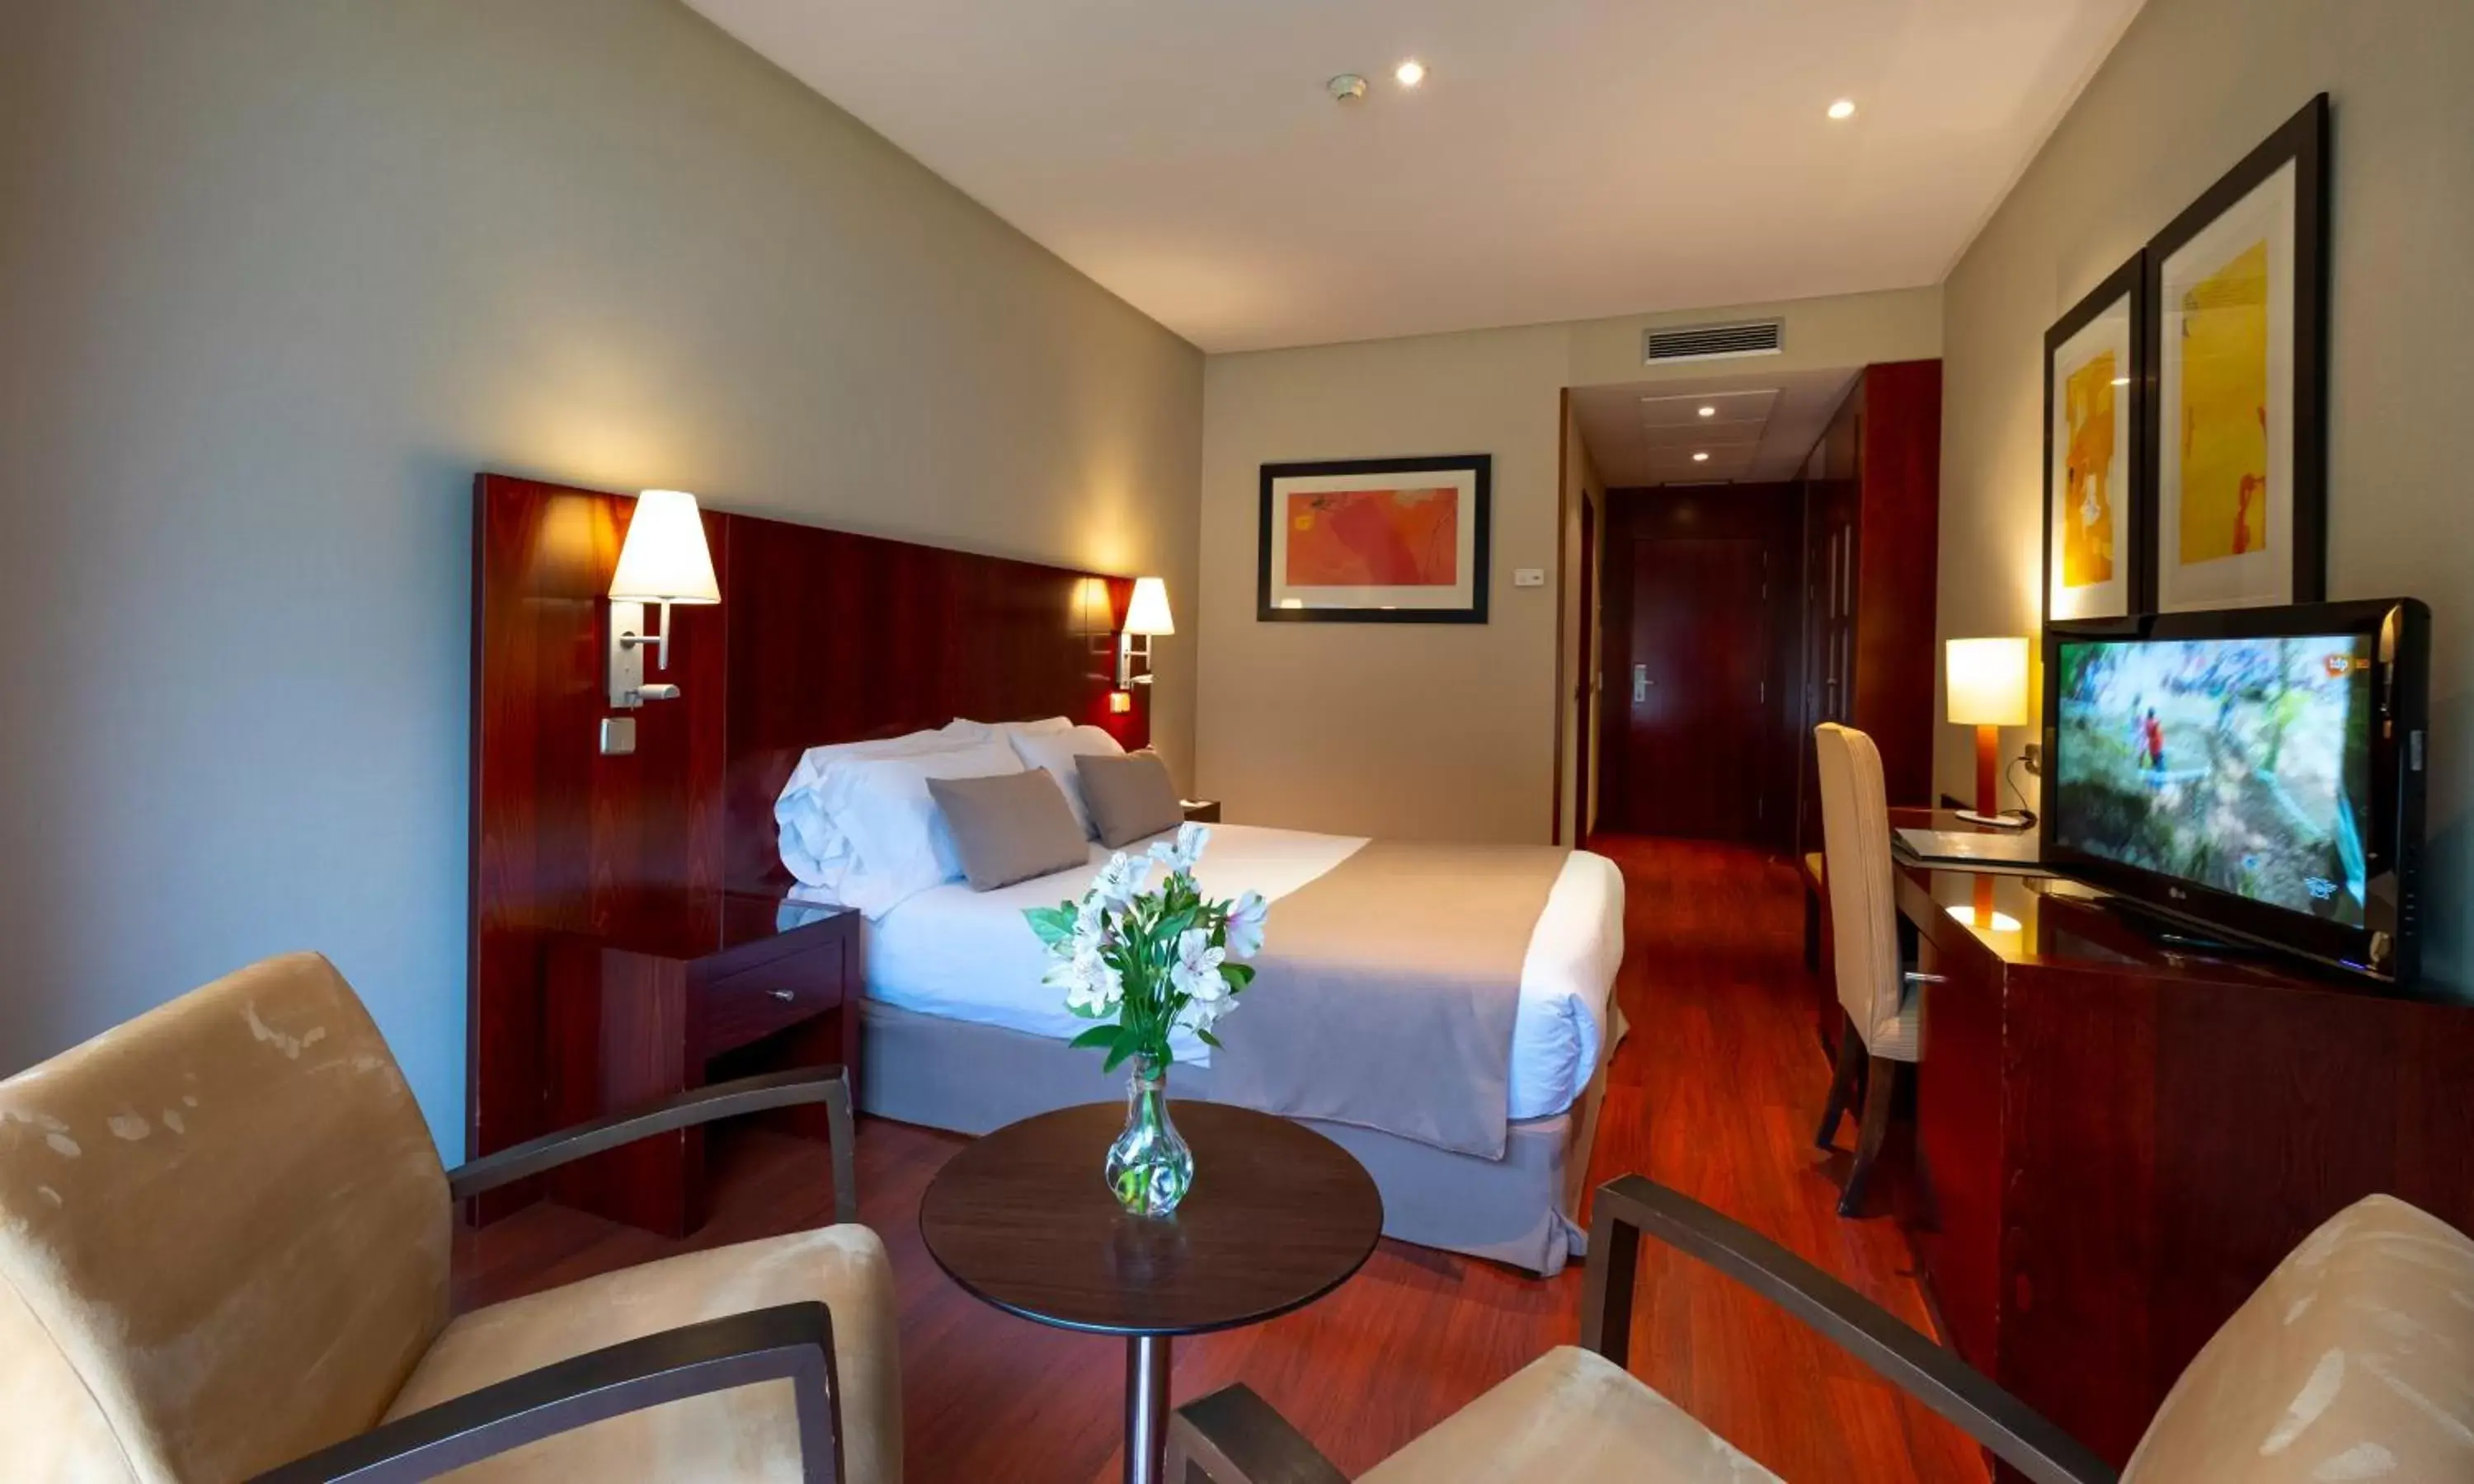 Bedroom, TV/Entertainment Center in Gran Hotel Attica21 Las Rozas